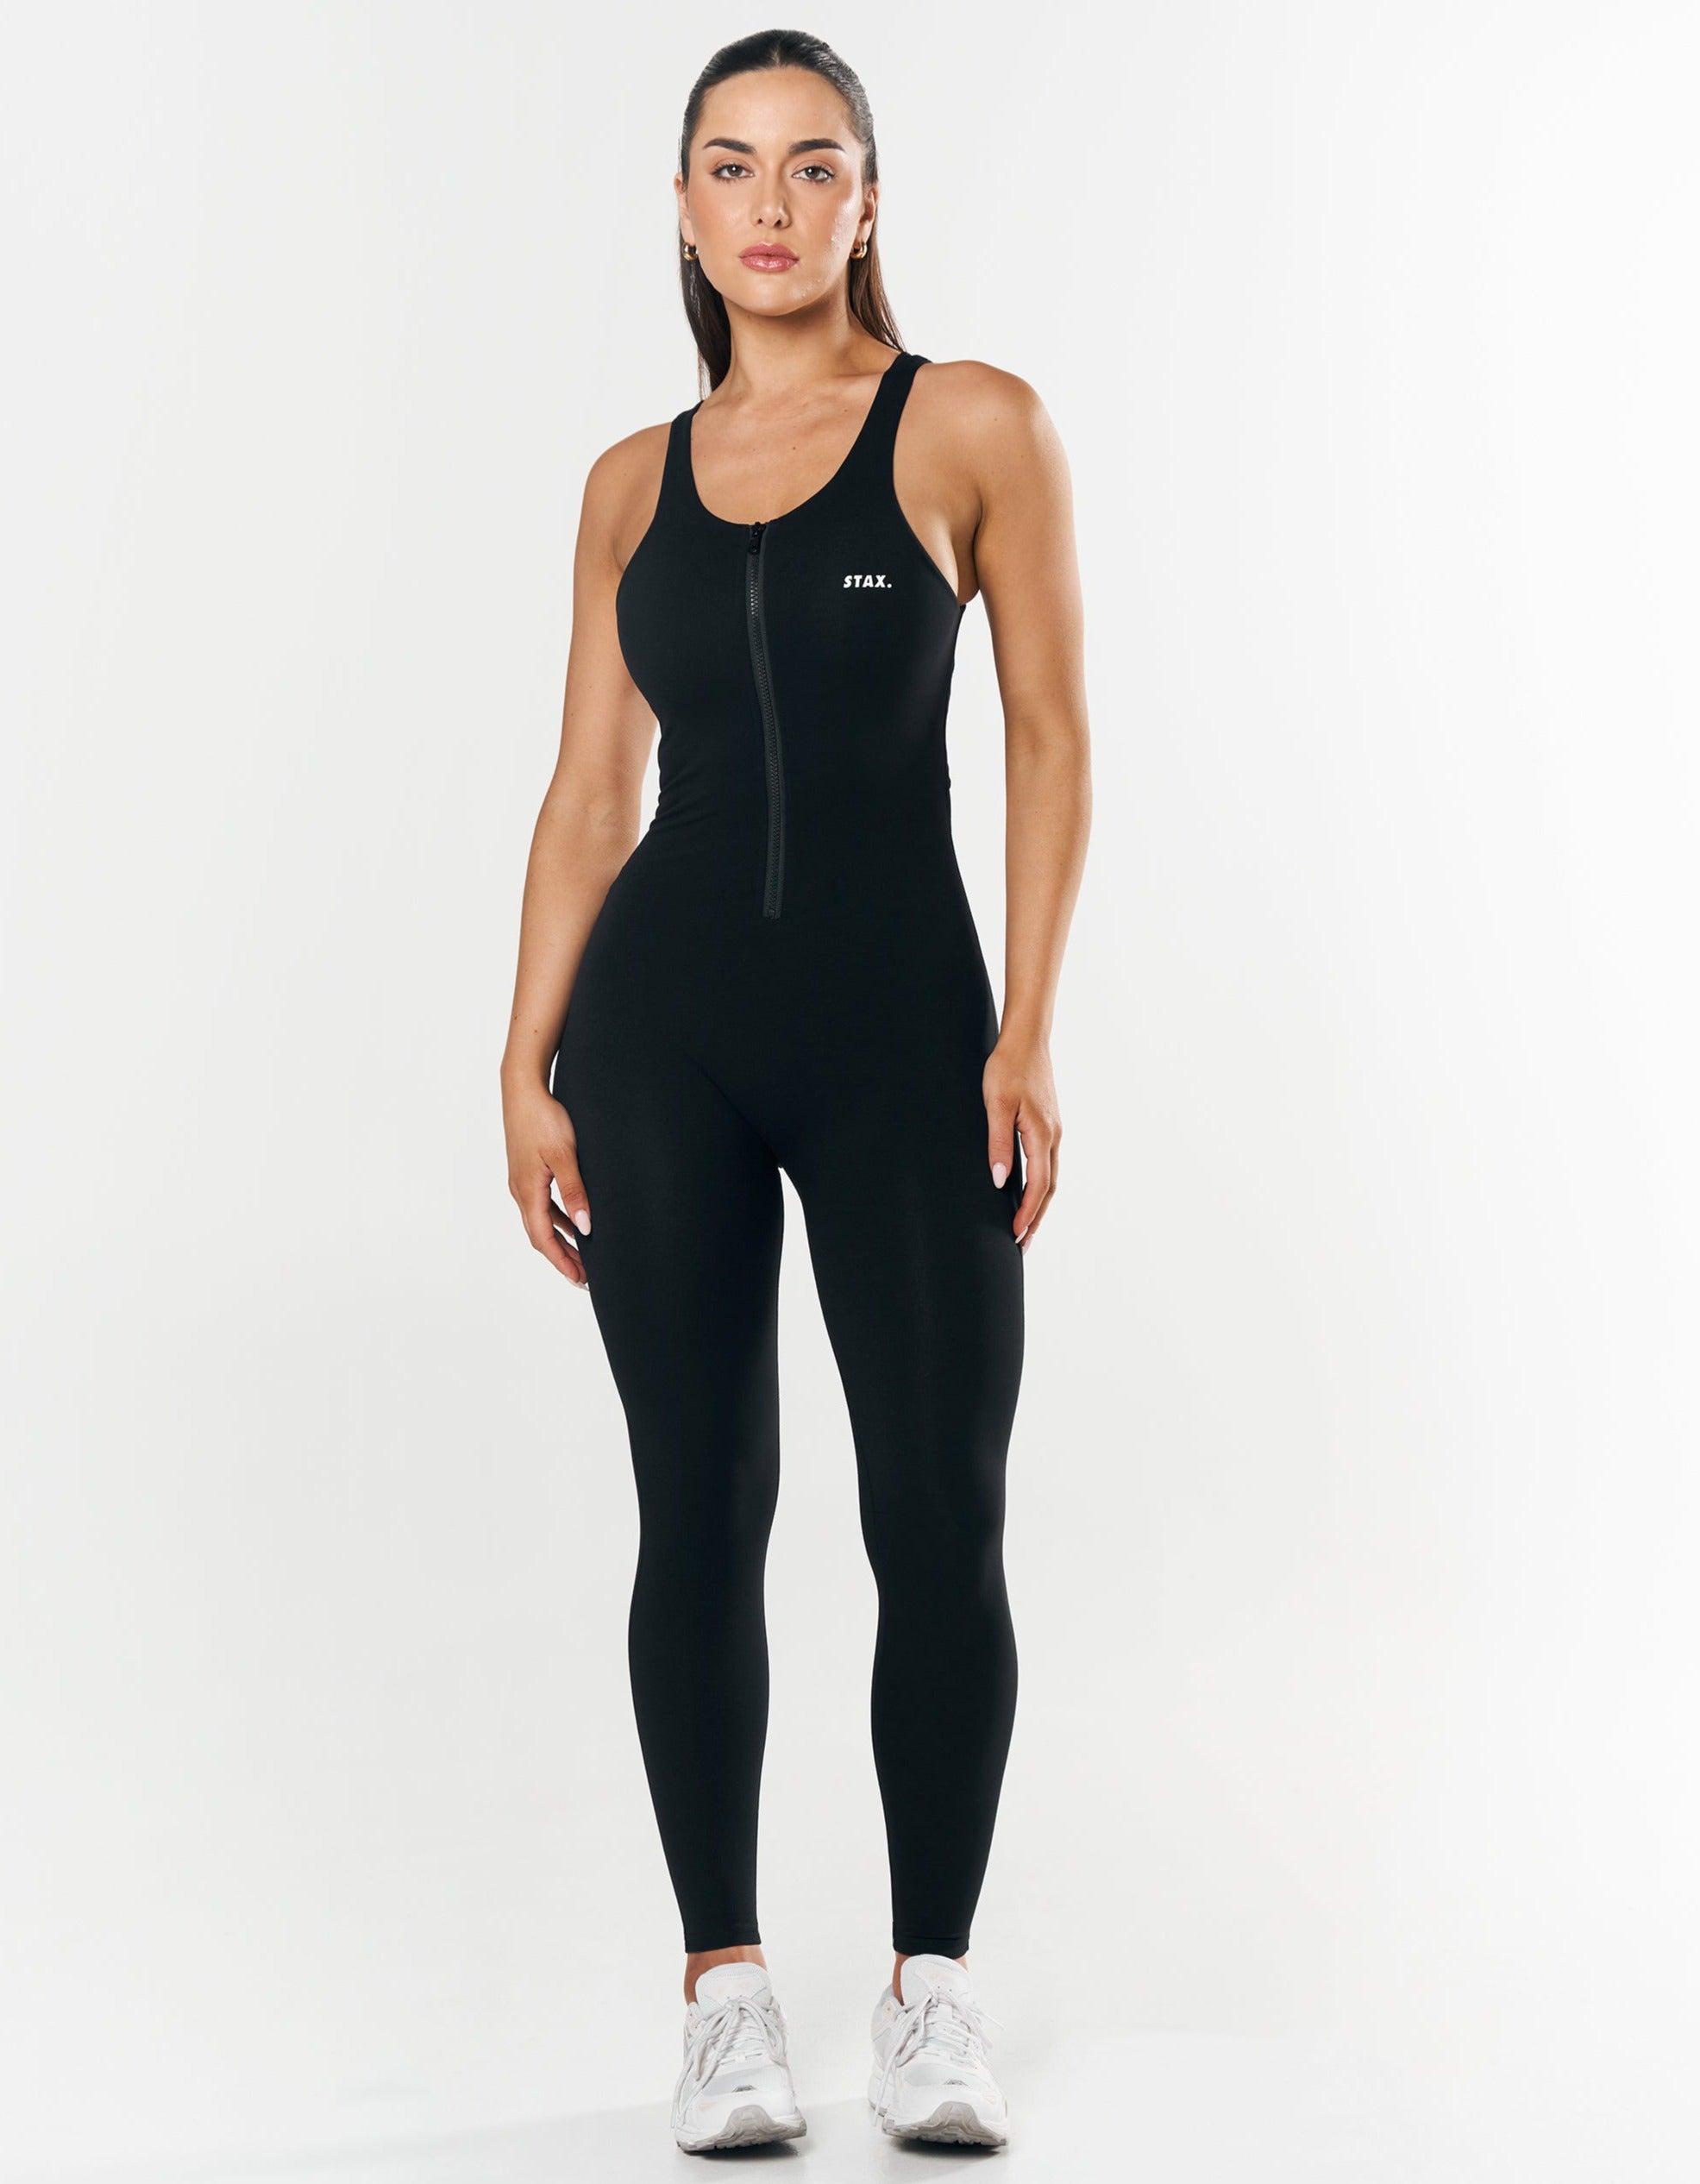 stax-full-length-bodysuit-nandex-black